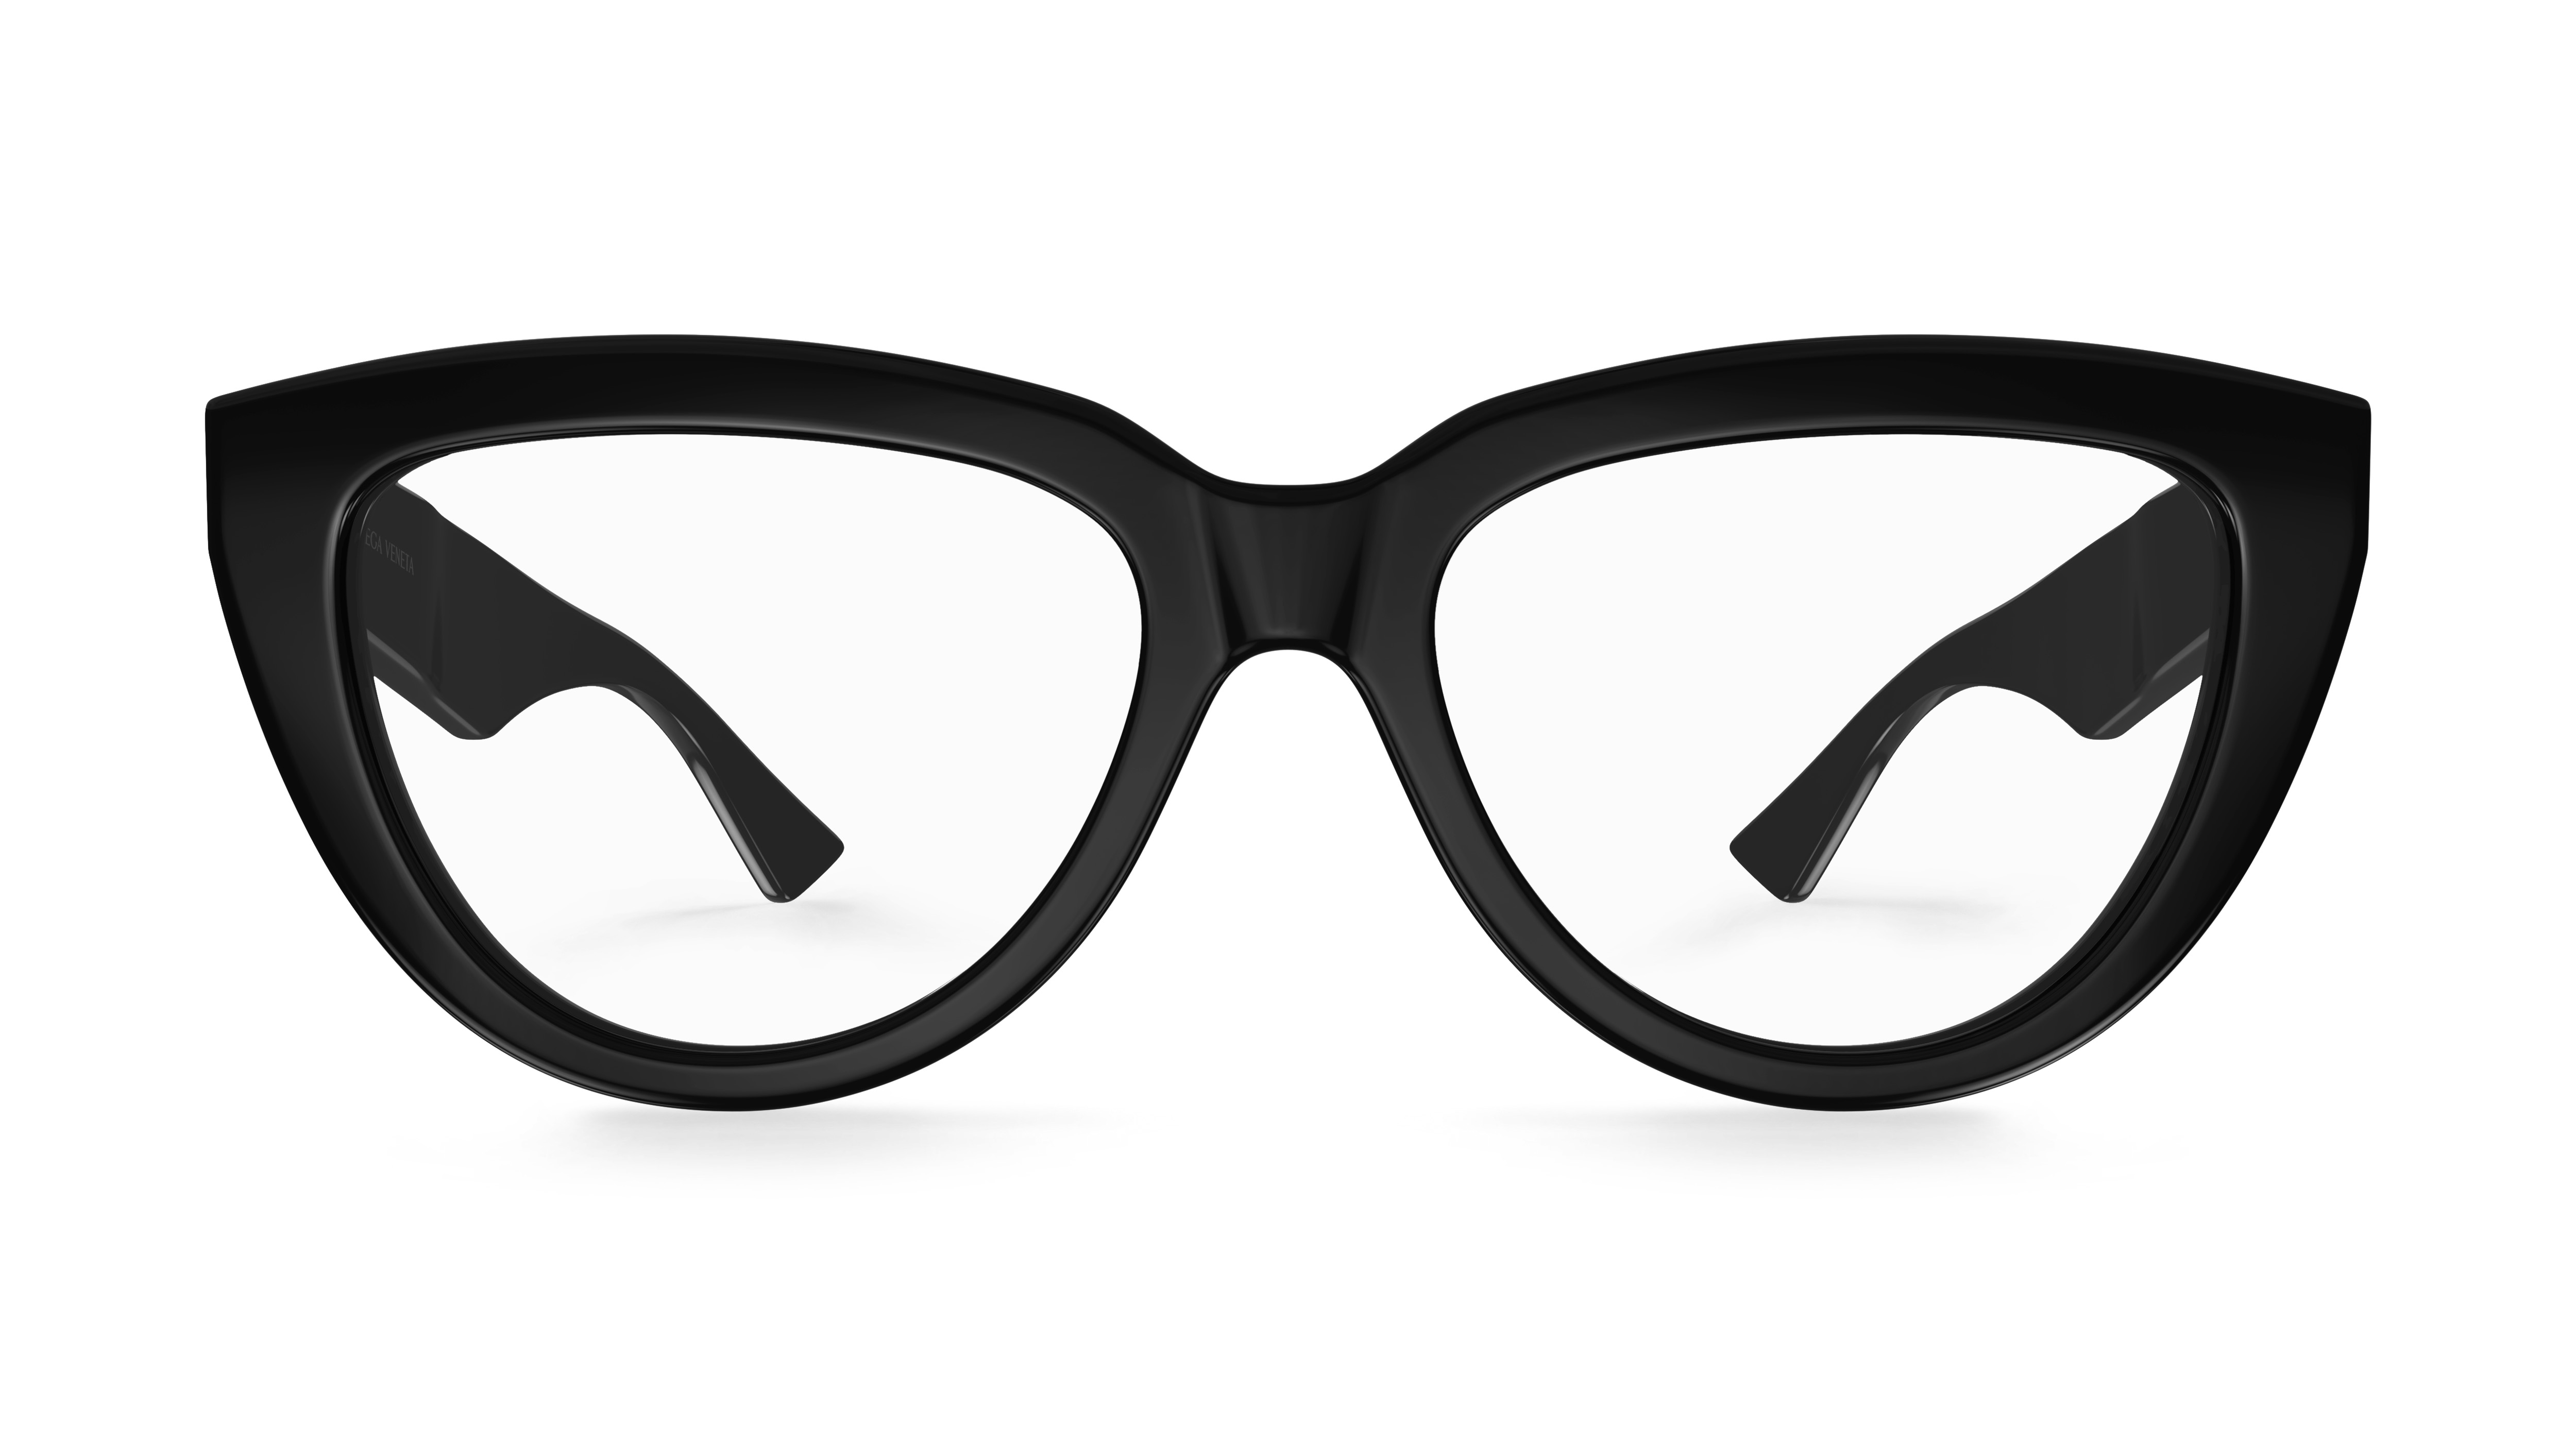 Kering plans to take eyewear business in-house